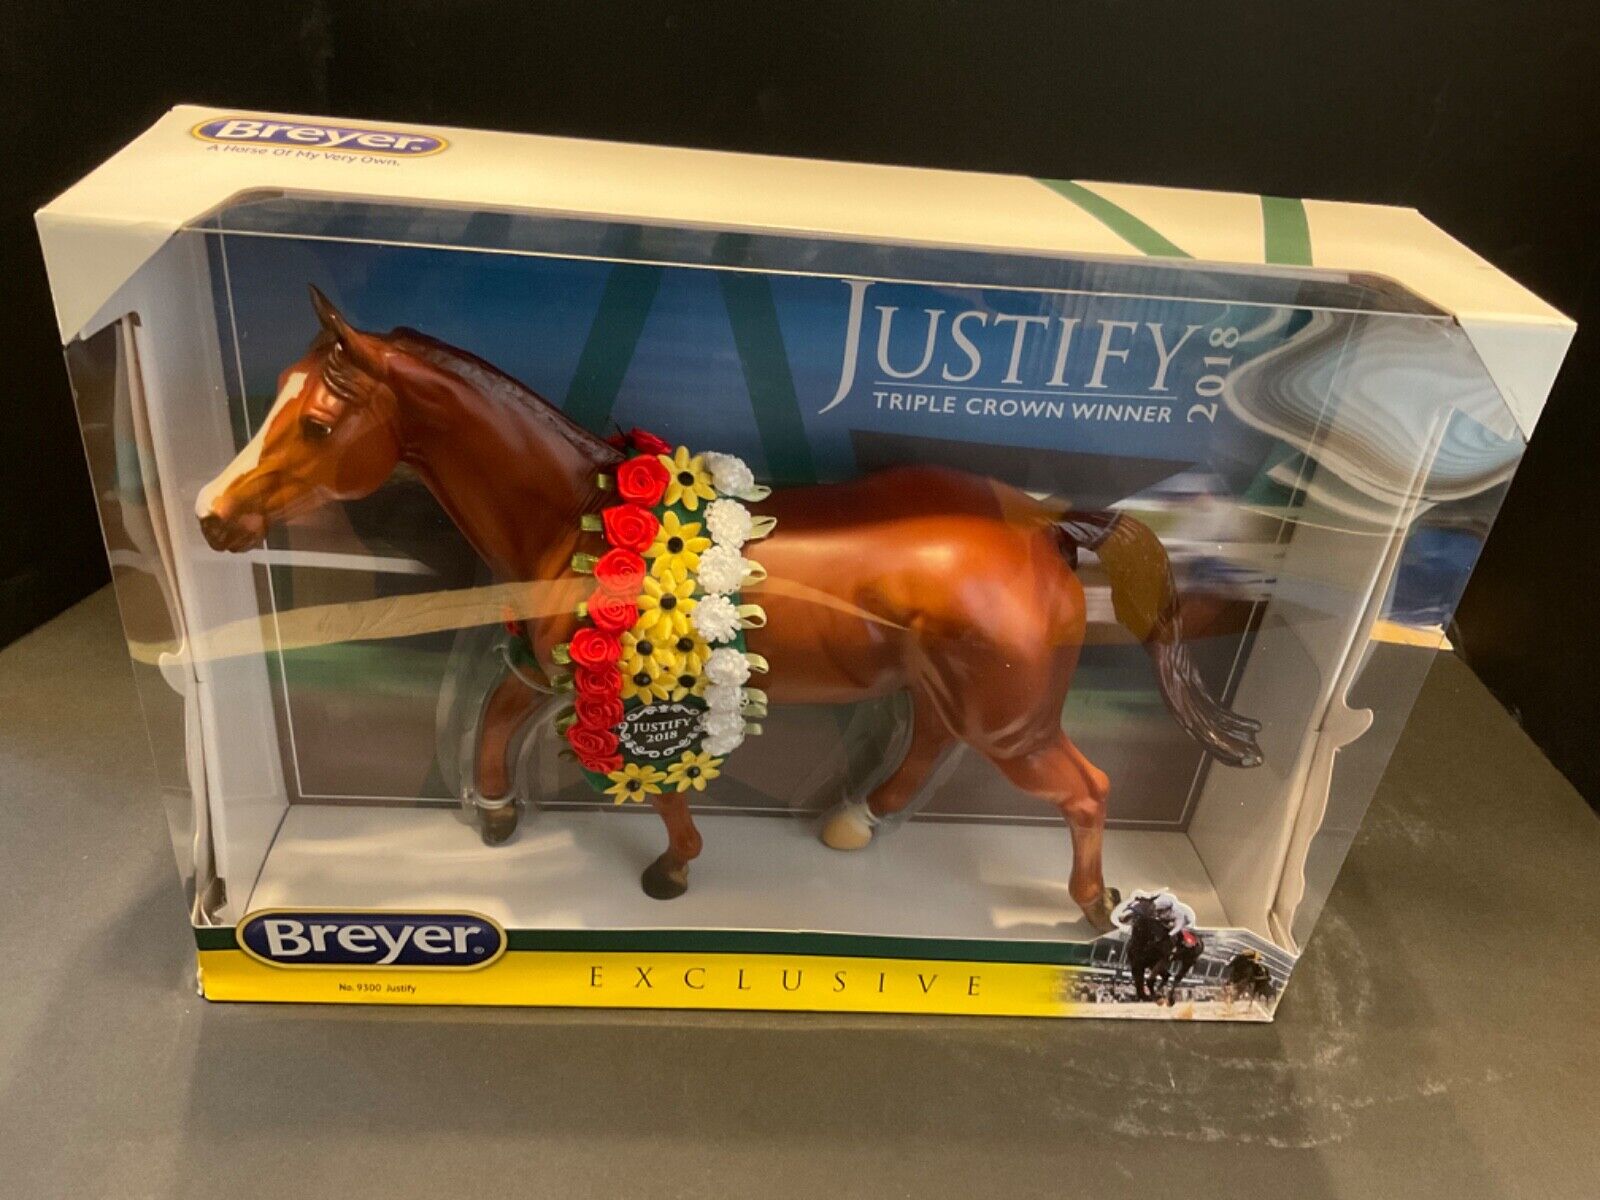 2018 BREYER EXCLUSIVE #9300 JUSTIFY TRIPLE CROWN WINNER NEW IN BOX